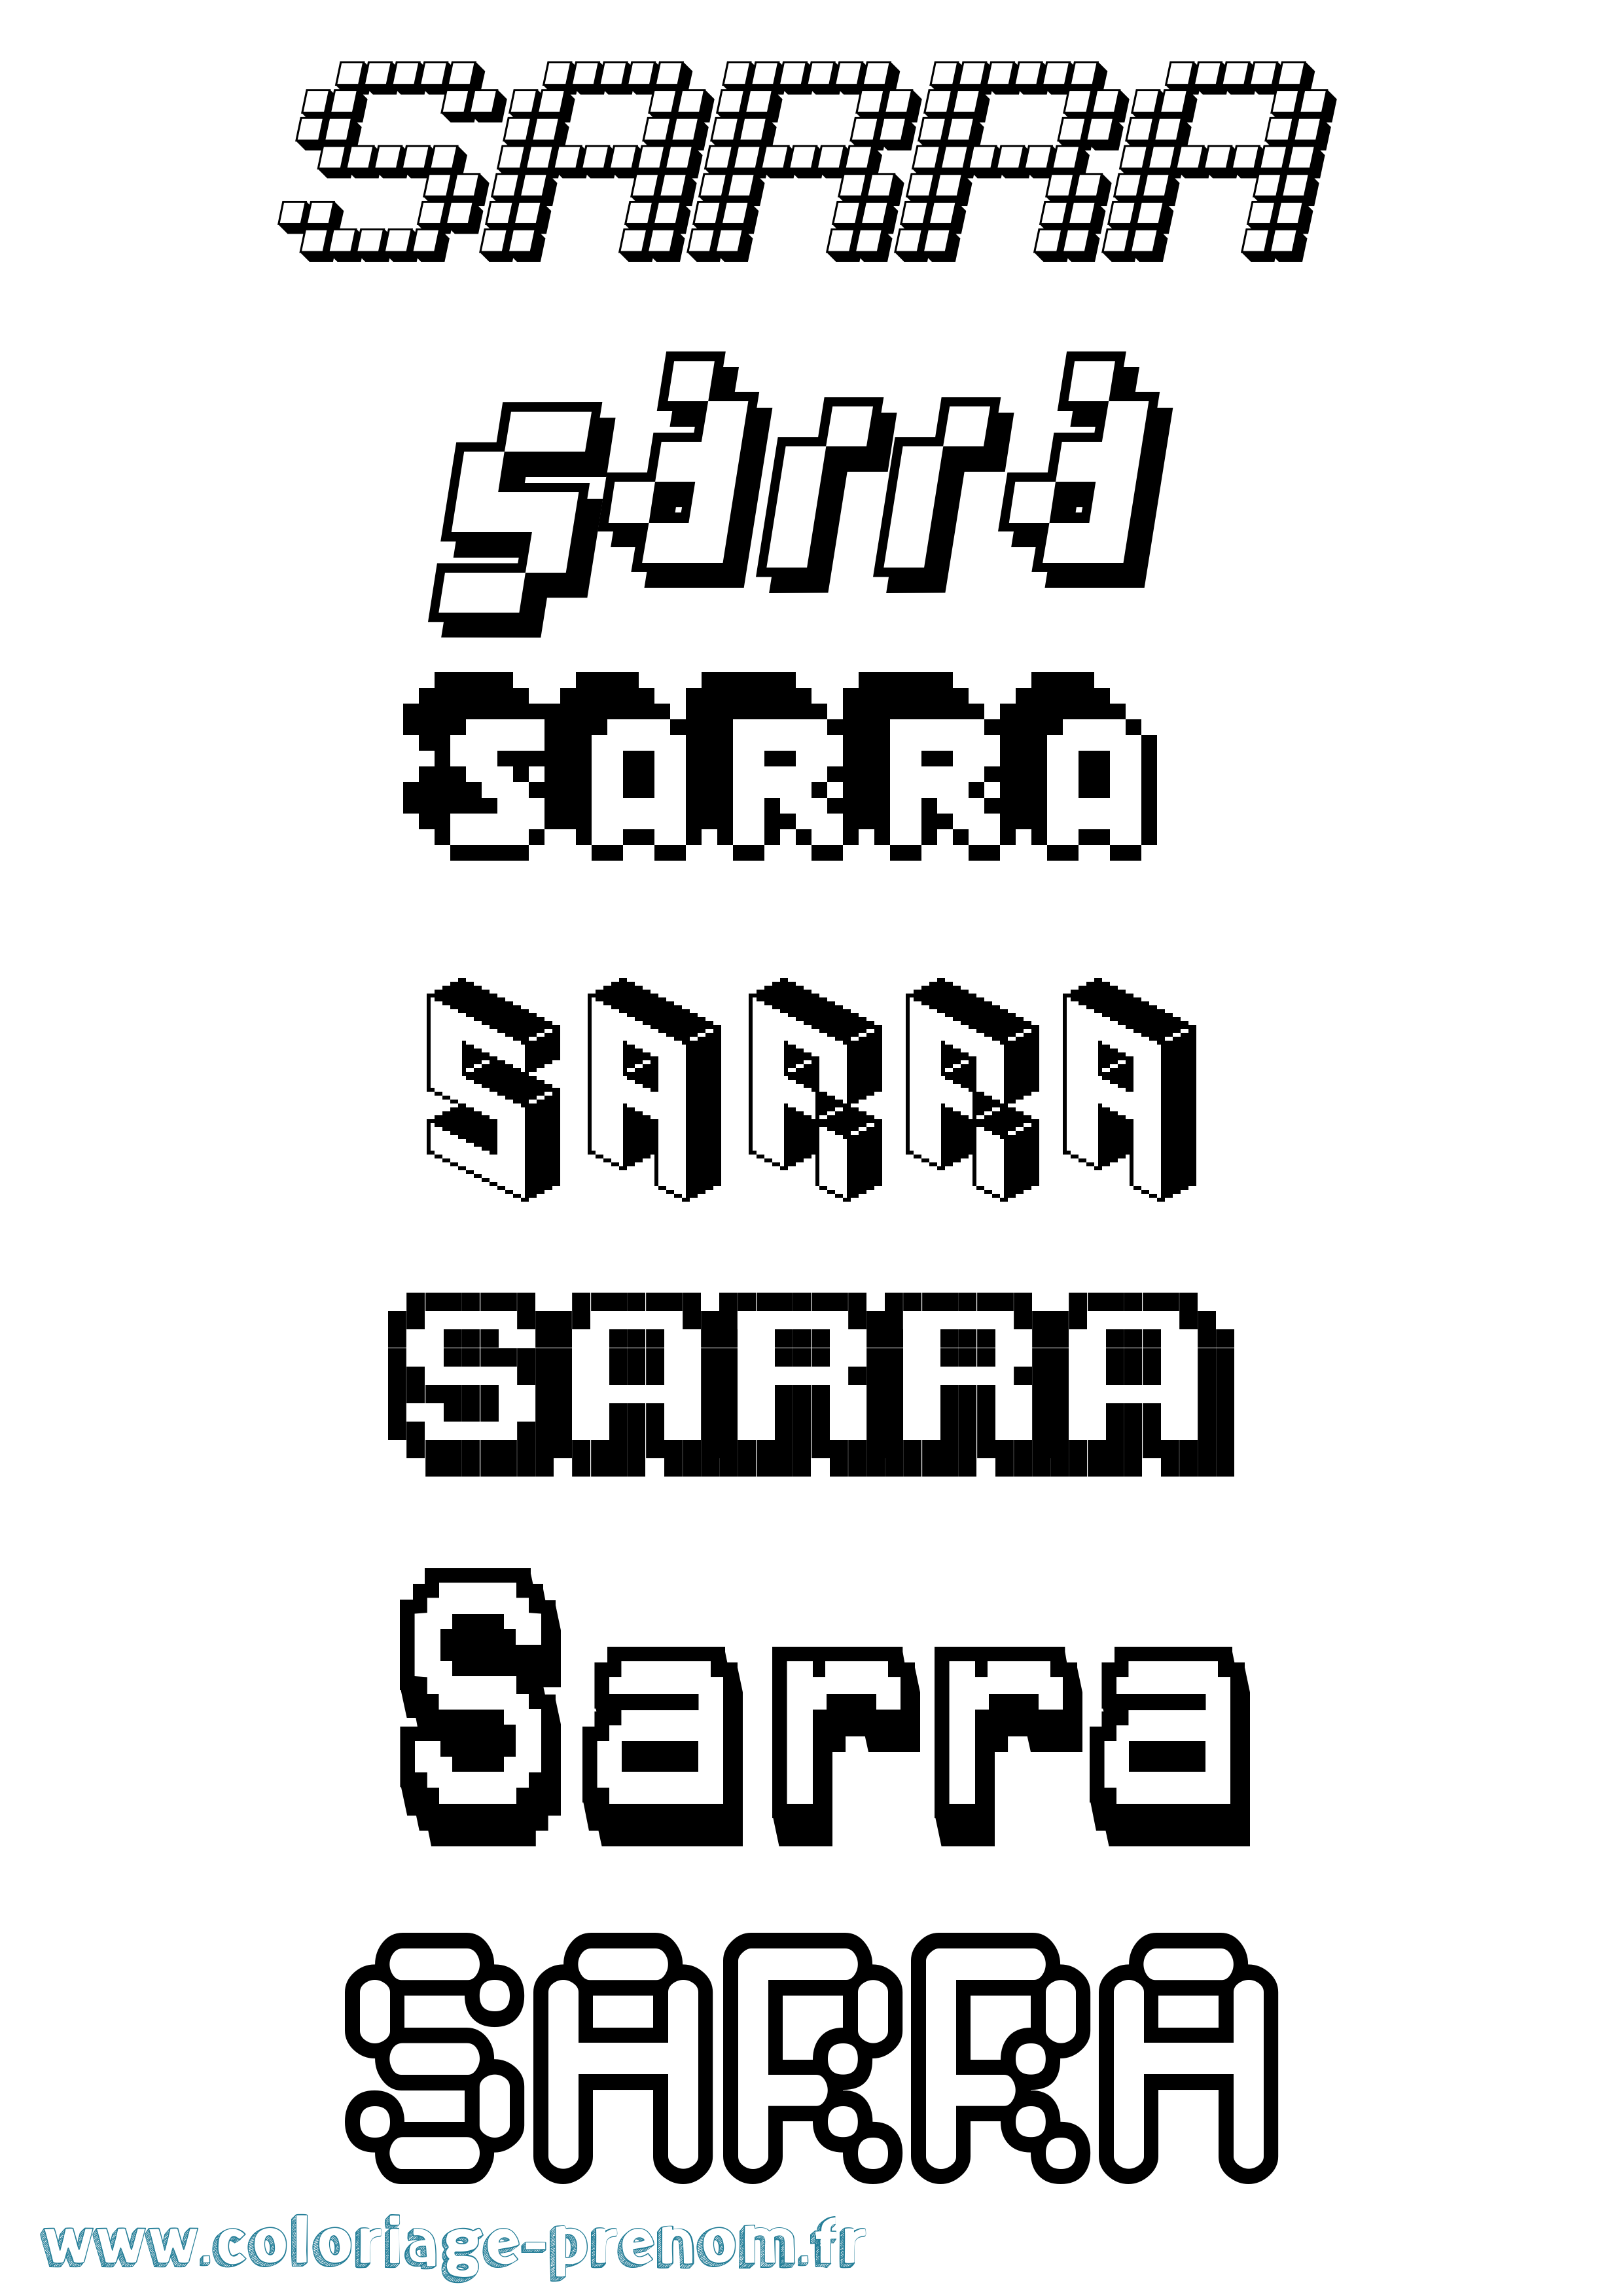 Coloriage prénom Sarra